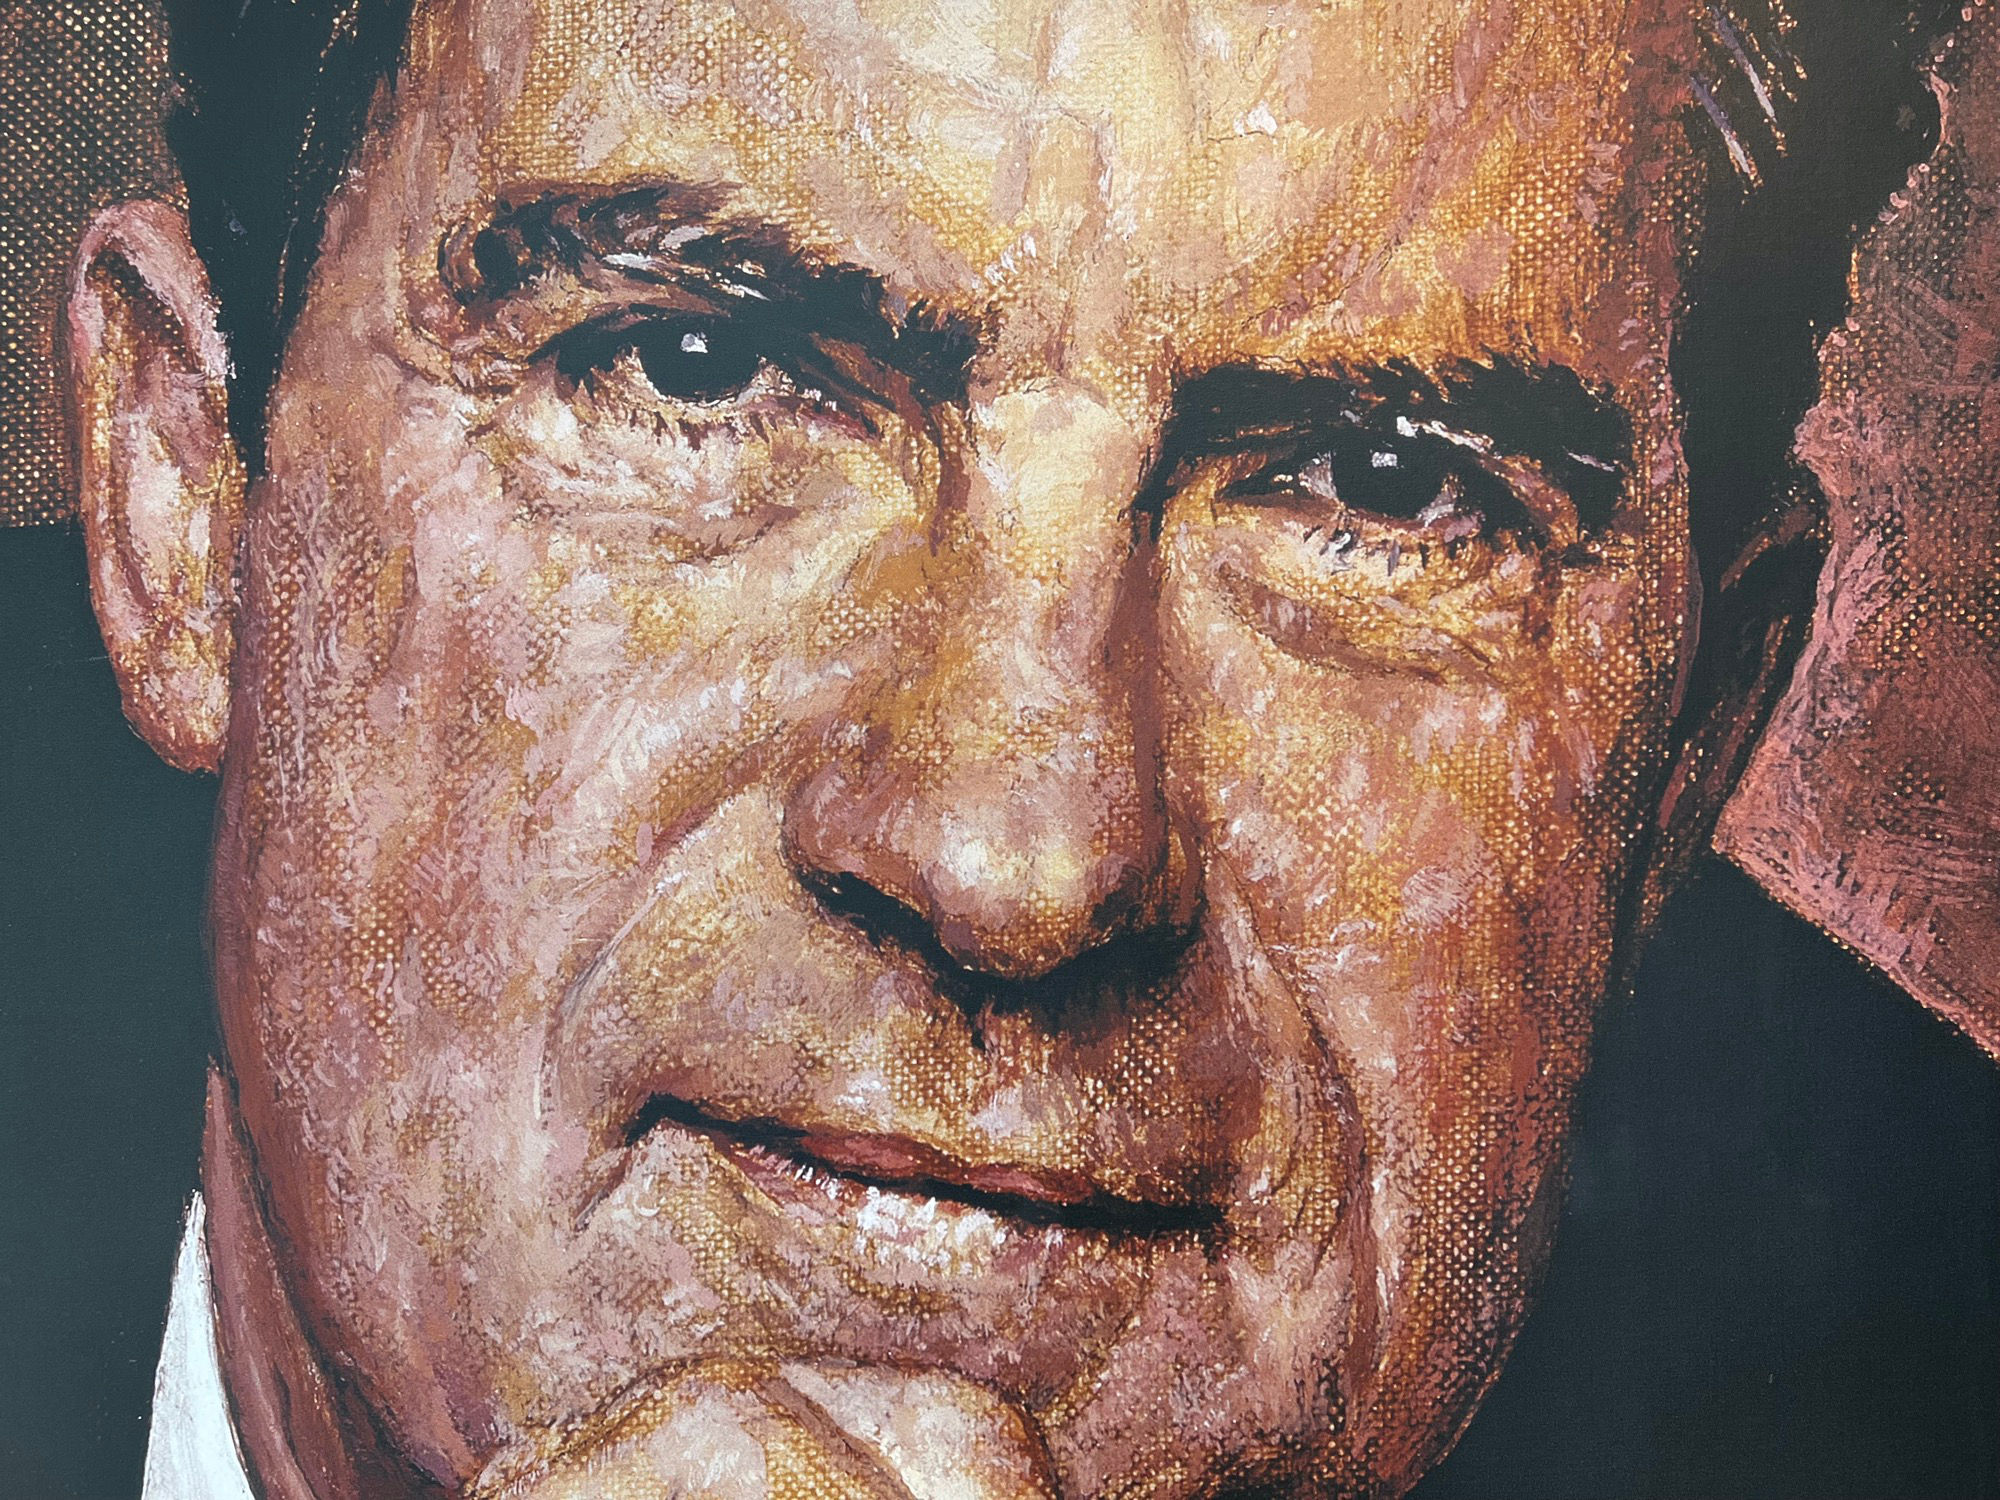 Nixon Library Mural